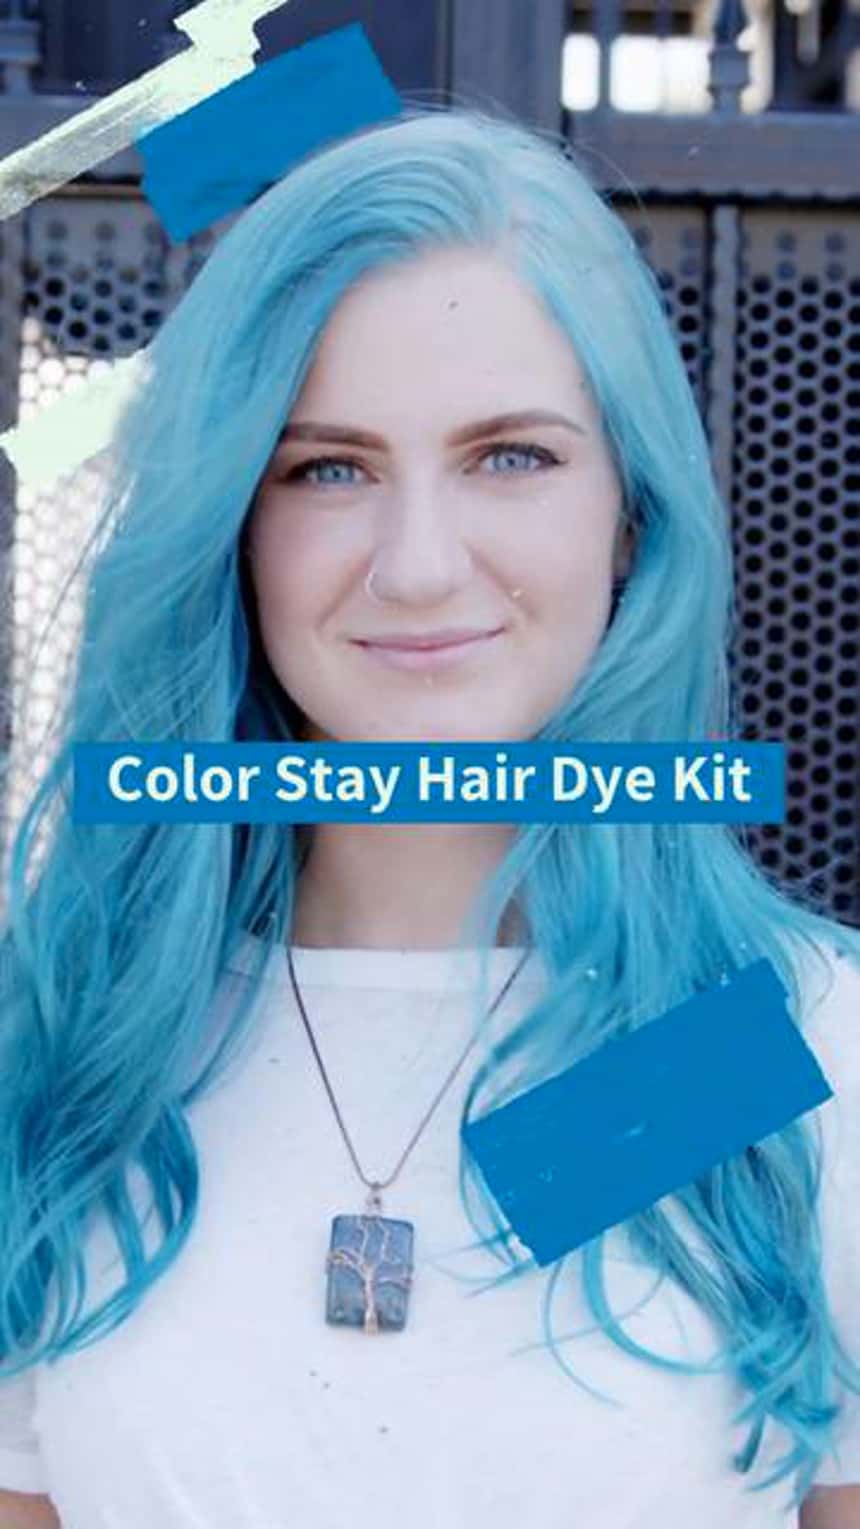 TikTok-Produktdemo mit einer Person mit blauen Haaren. Der Text auf dem Bild lautet: „Color Stay Hair Dye Kit.“